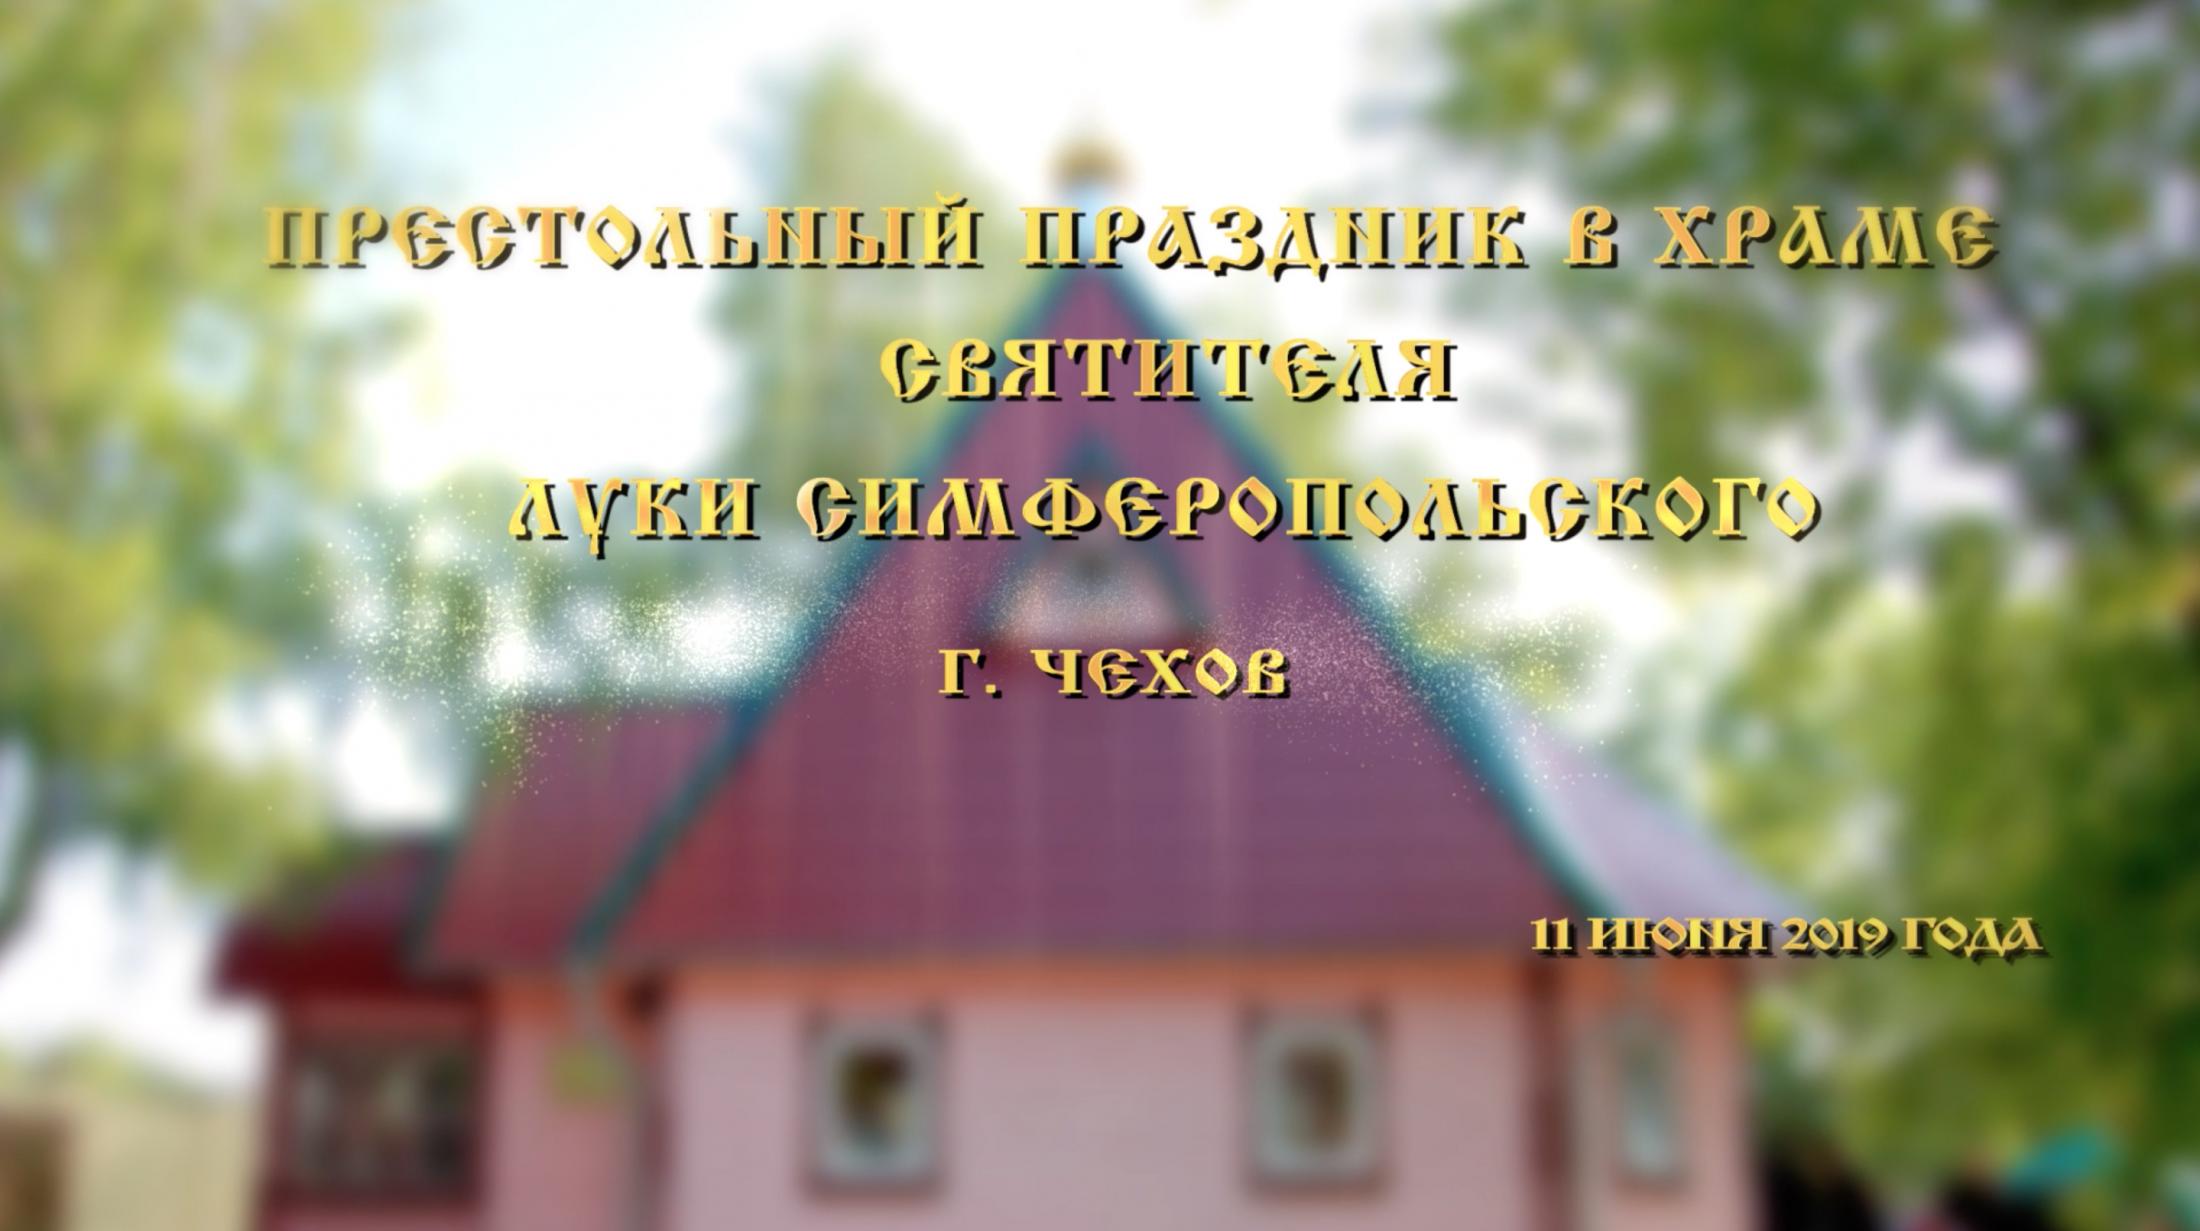 snimok_ekrana_2019-06-17_v_9.35.27_kopiya_0.jpg